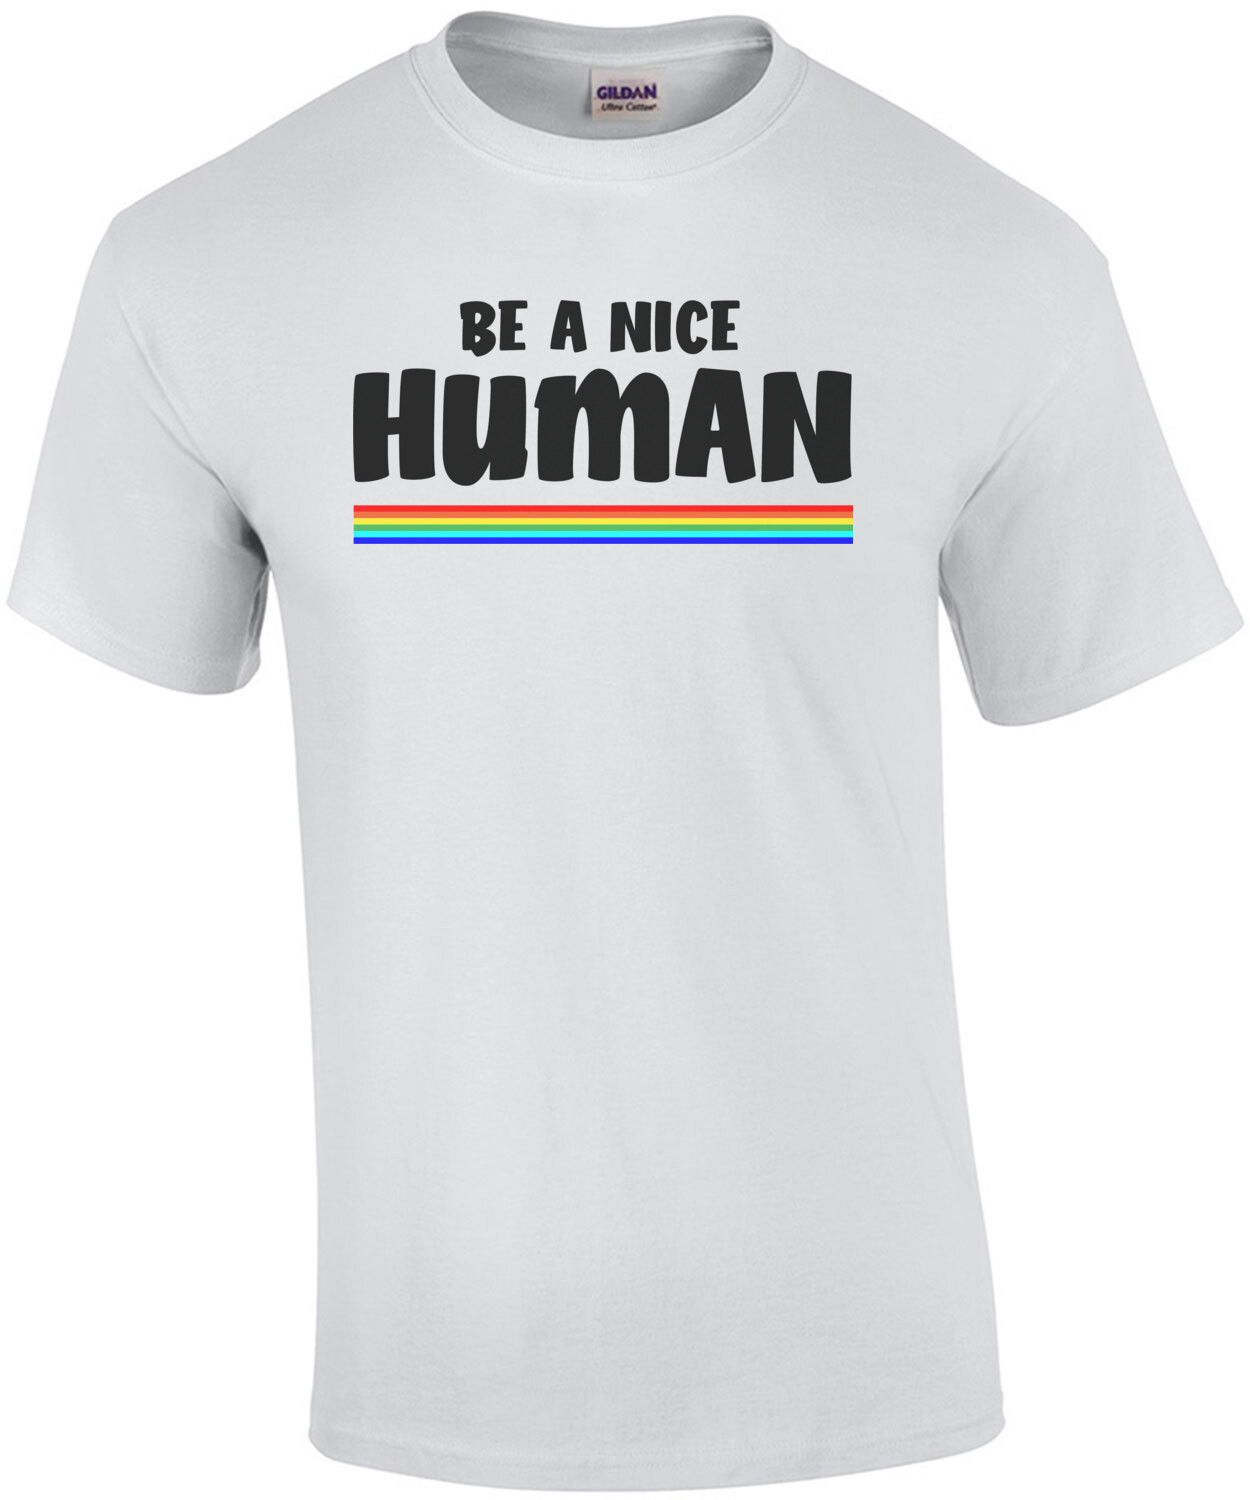 Be a nice human - t-shirt